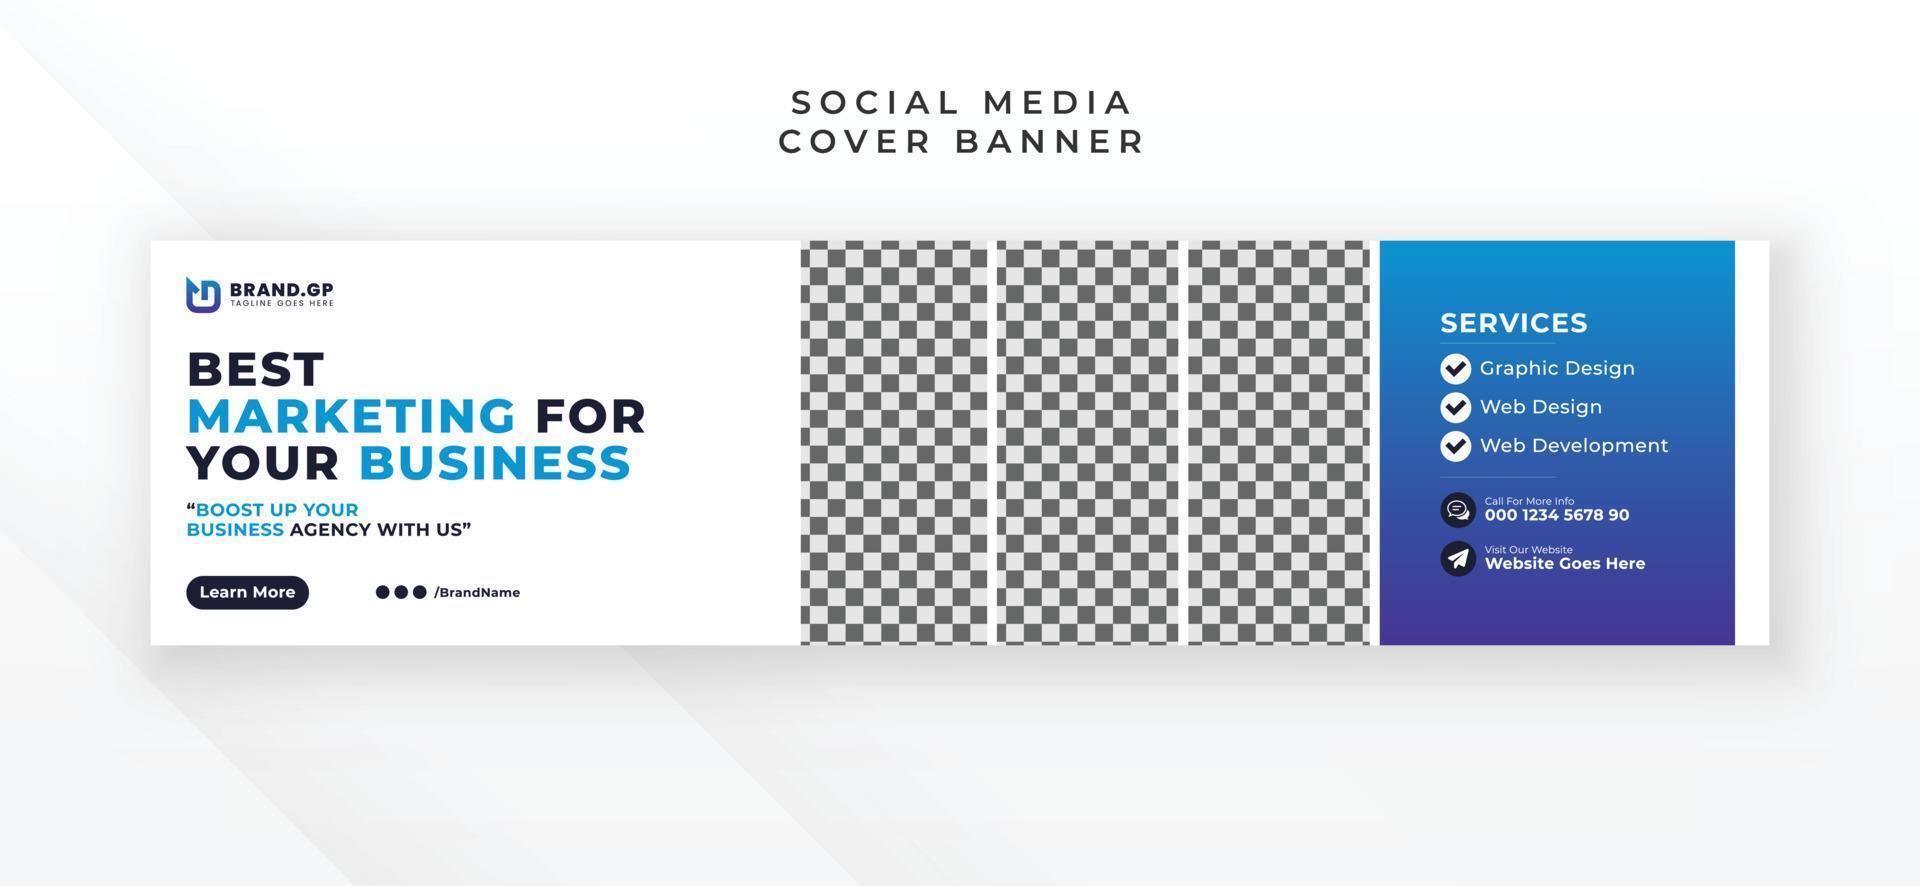 moderno creativo sociale media linkedin copertina bandiera anno Domini design vettore